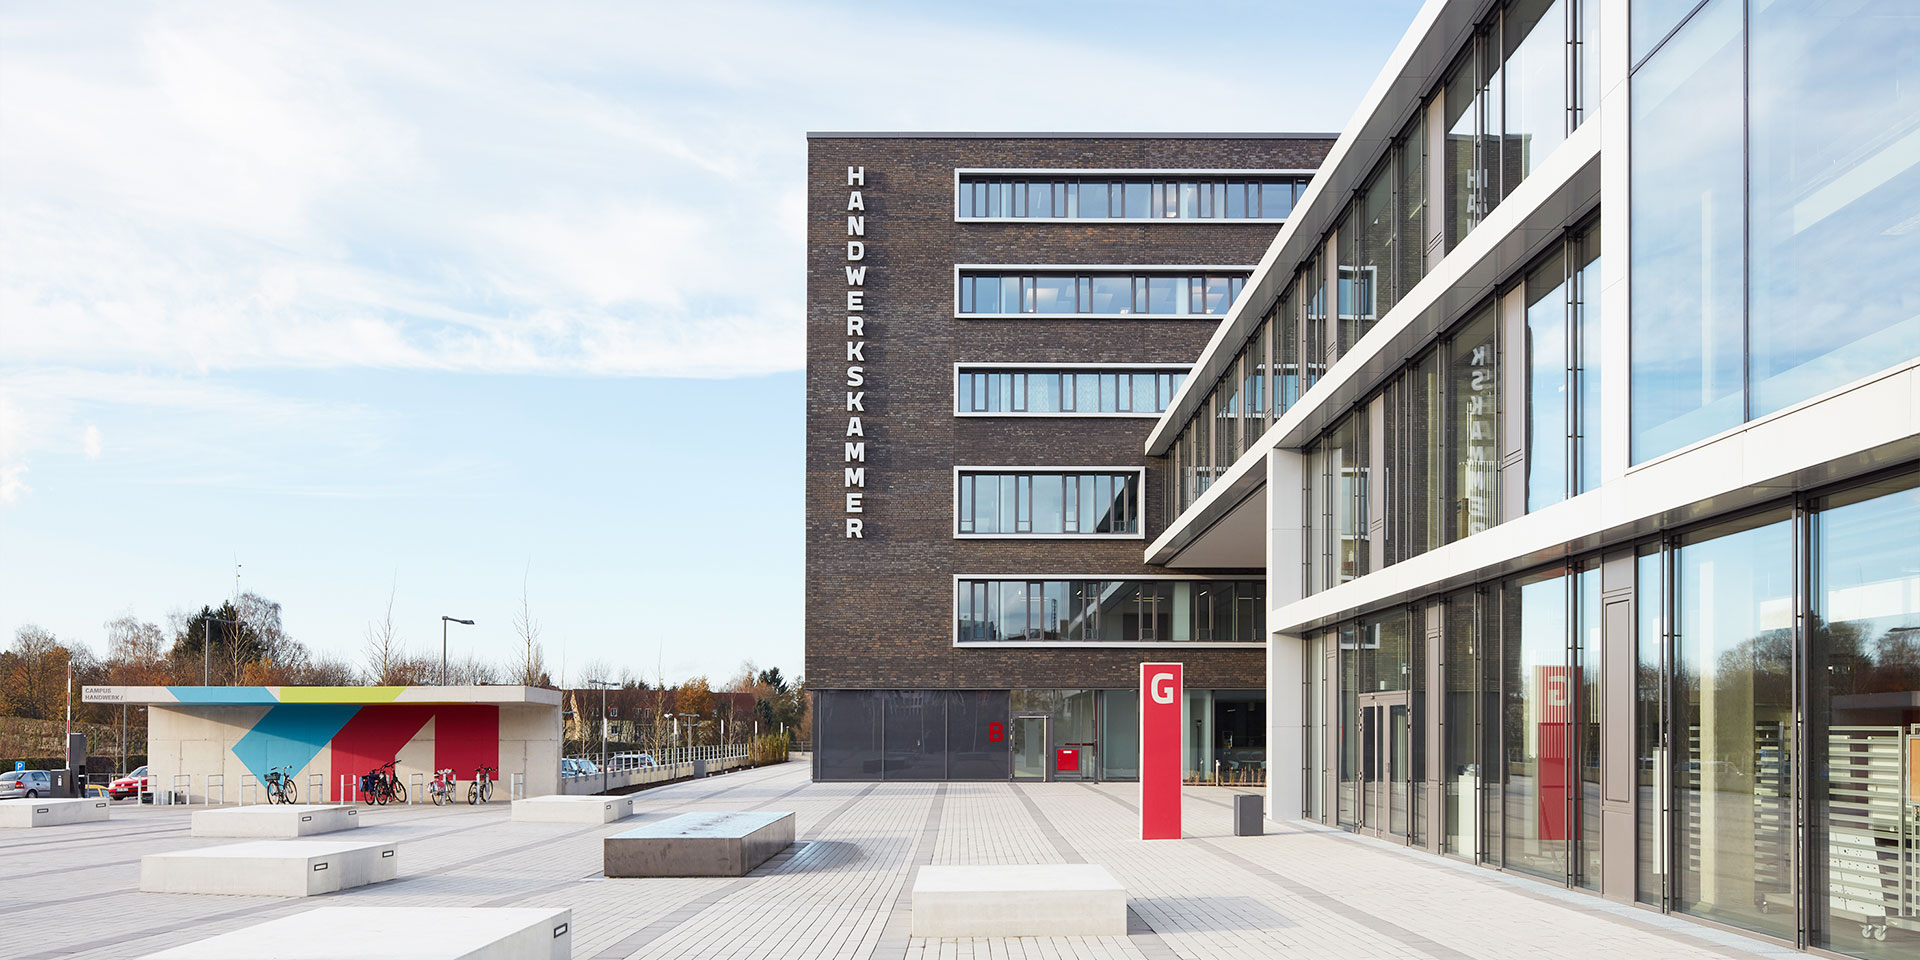 Handwerkskammer Ostwestfalen-Lippe zu Bielefeld | Campus Handwerk